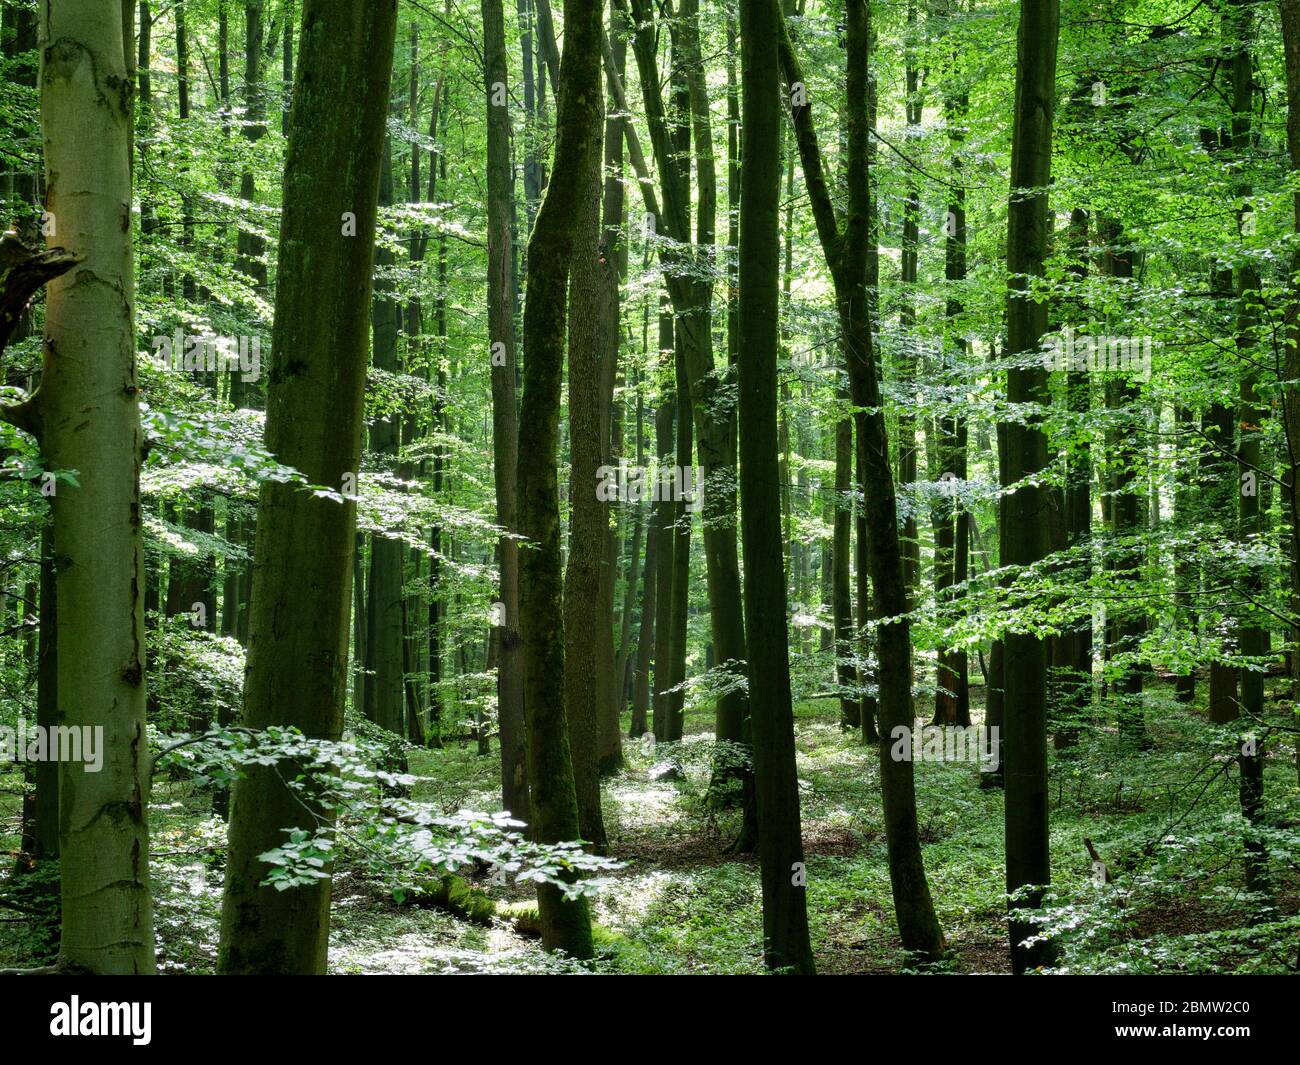 Nationalpark Hainich, UNESCO Welterbe Buchenwald, Urwald, Thüringen, Deutschland Stock Photo